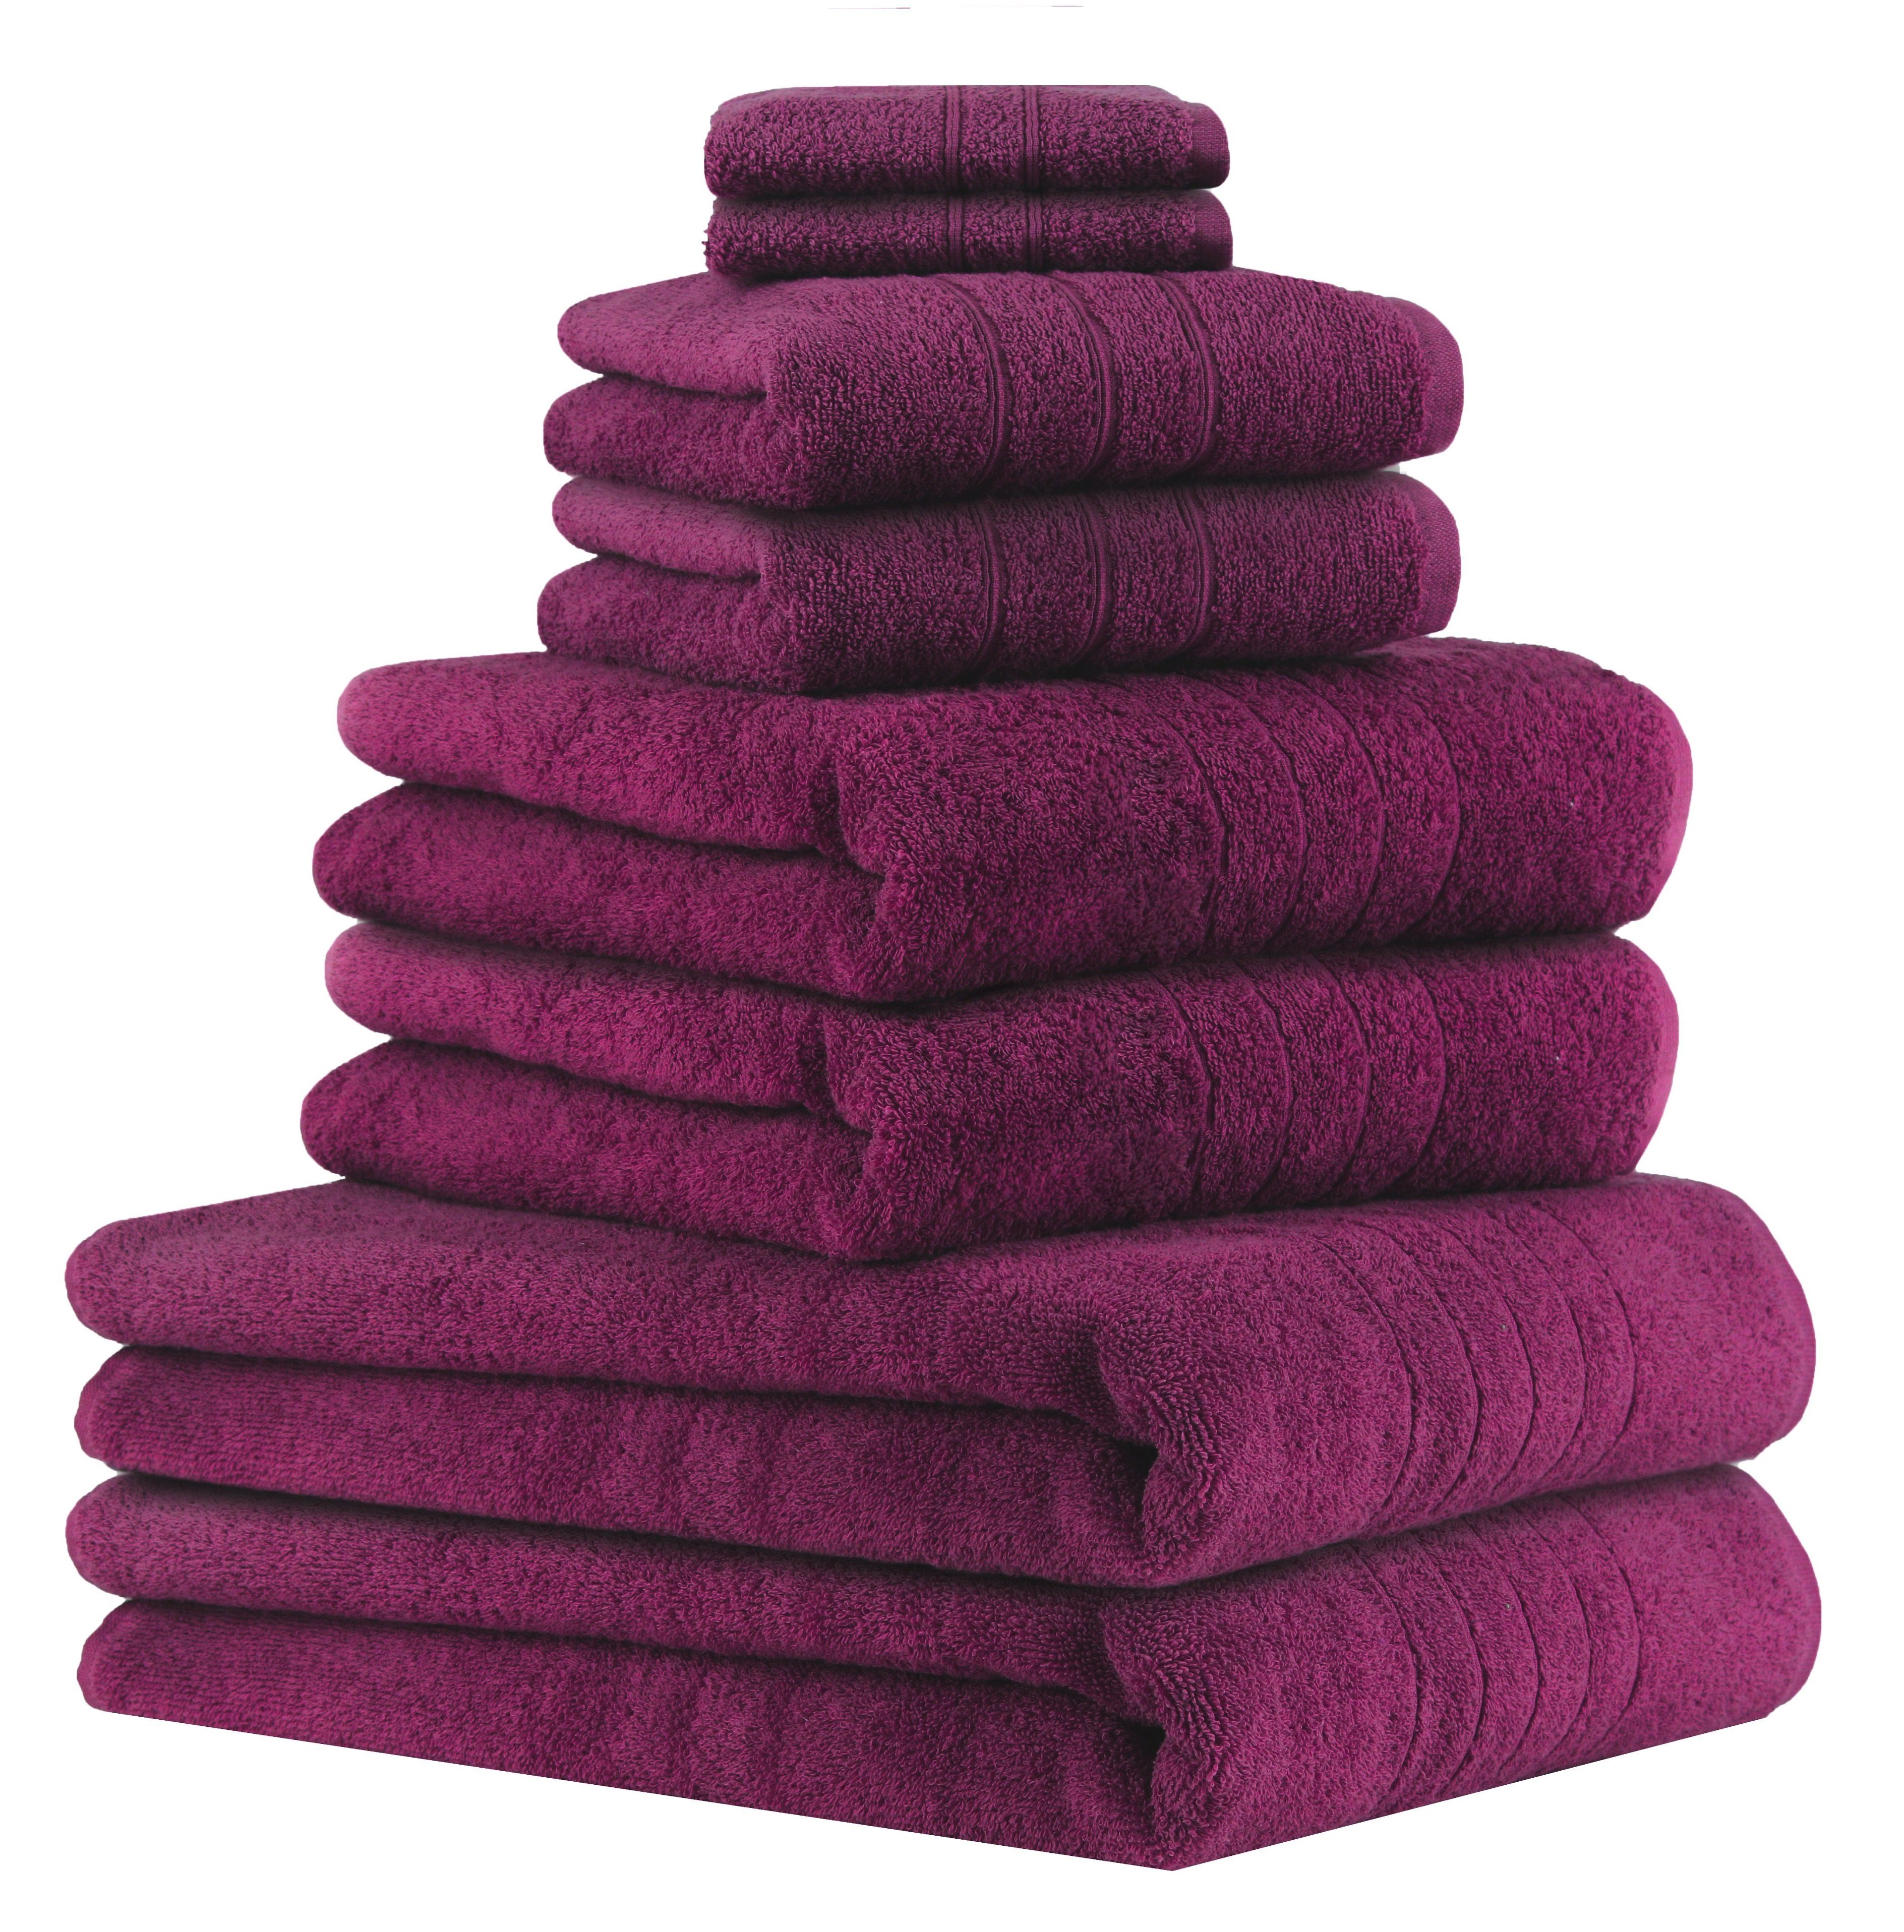 Betz Handtuch Set 8-TLG Handtuch-Set Deluxe 100% Baumwolle 2 Badetücher 2 Duschtücher 2 Handtücher 2 Seiftücher, 100% Baumwolle, (8-tlg) pflaume